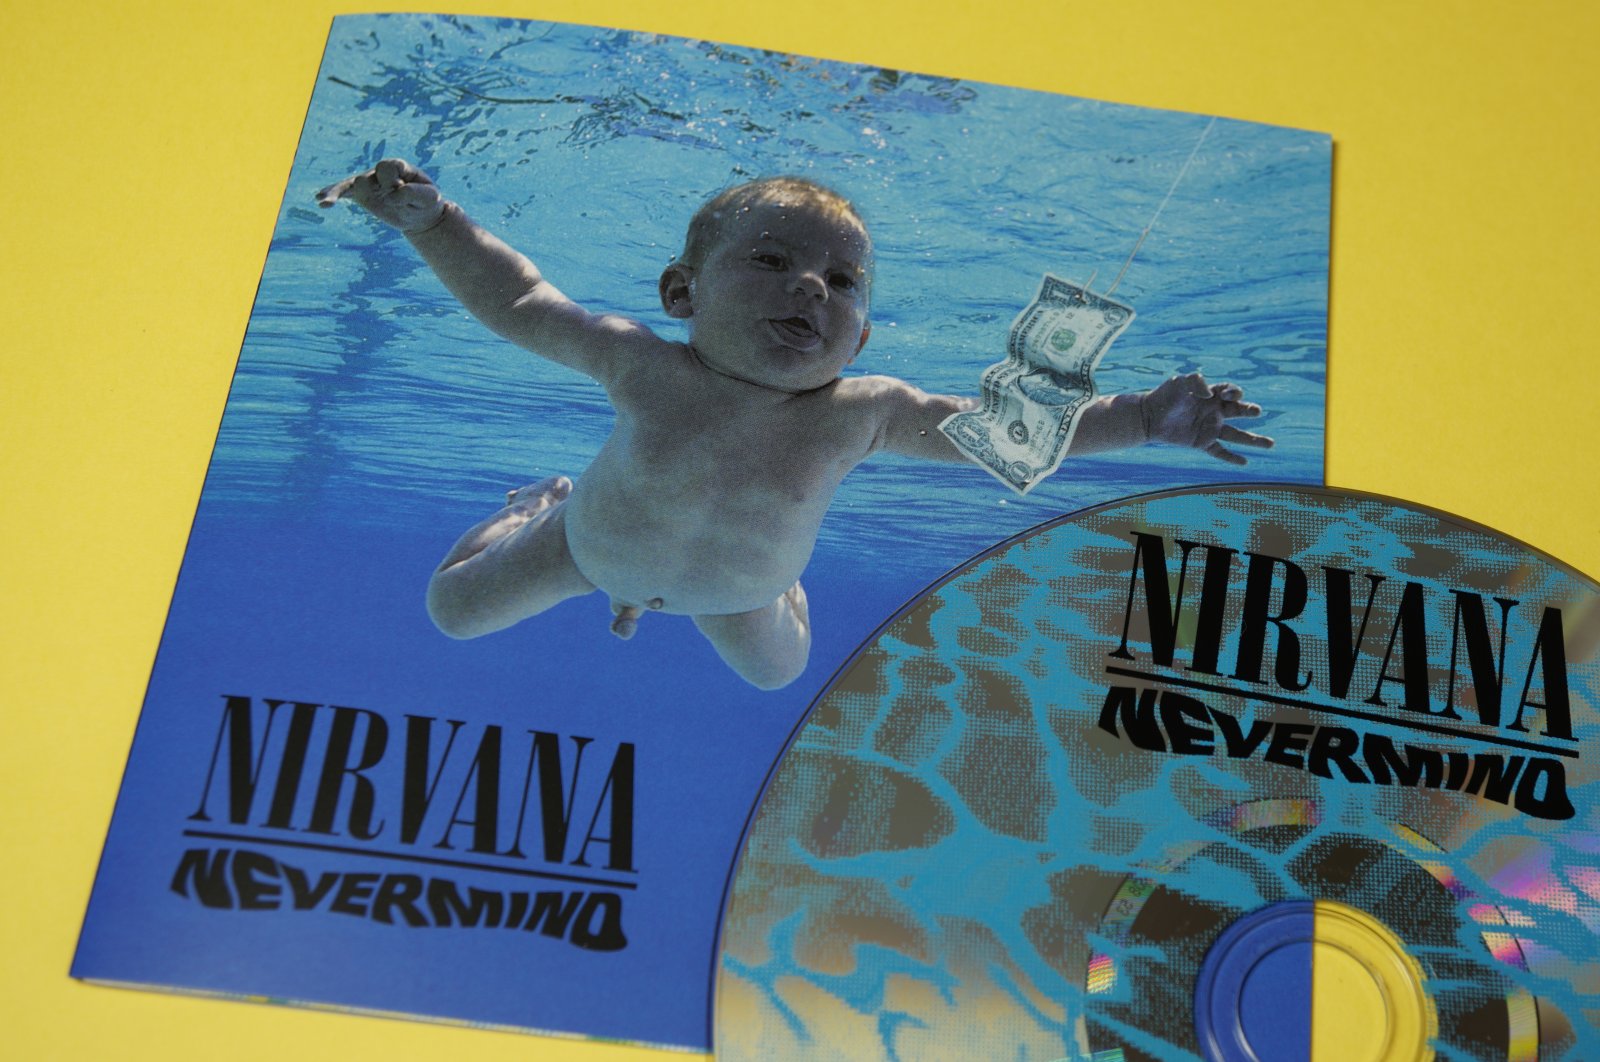 Bayi ‘Nevermind’ menghidupkan kembali gugatan sampul album terhadap Nirvana